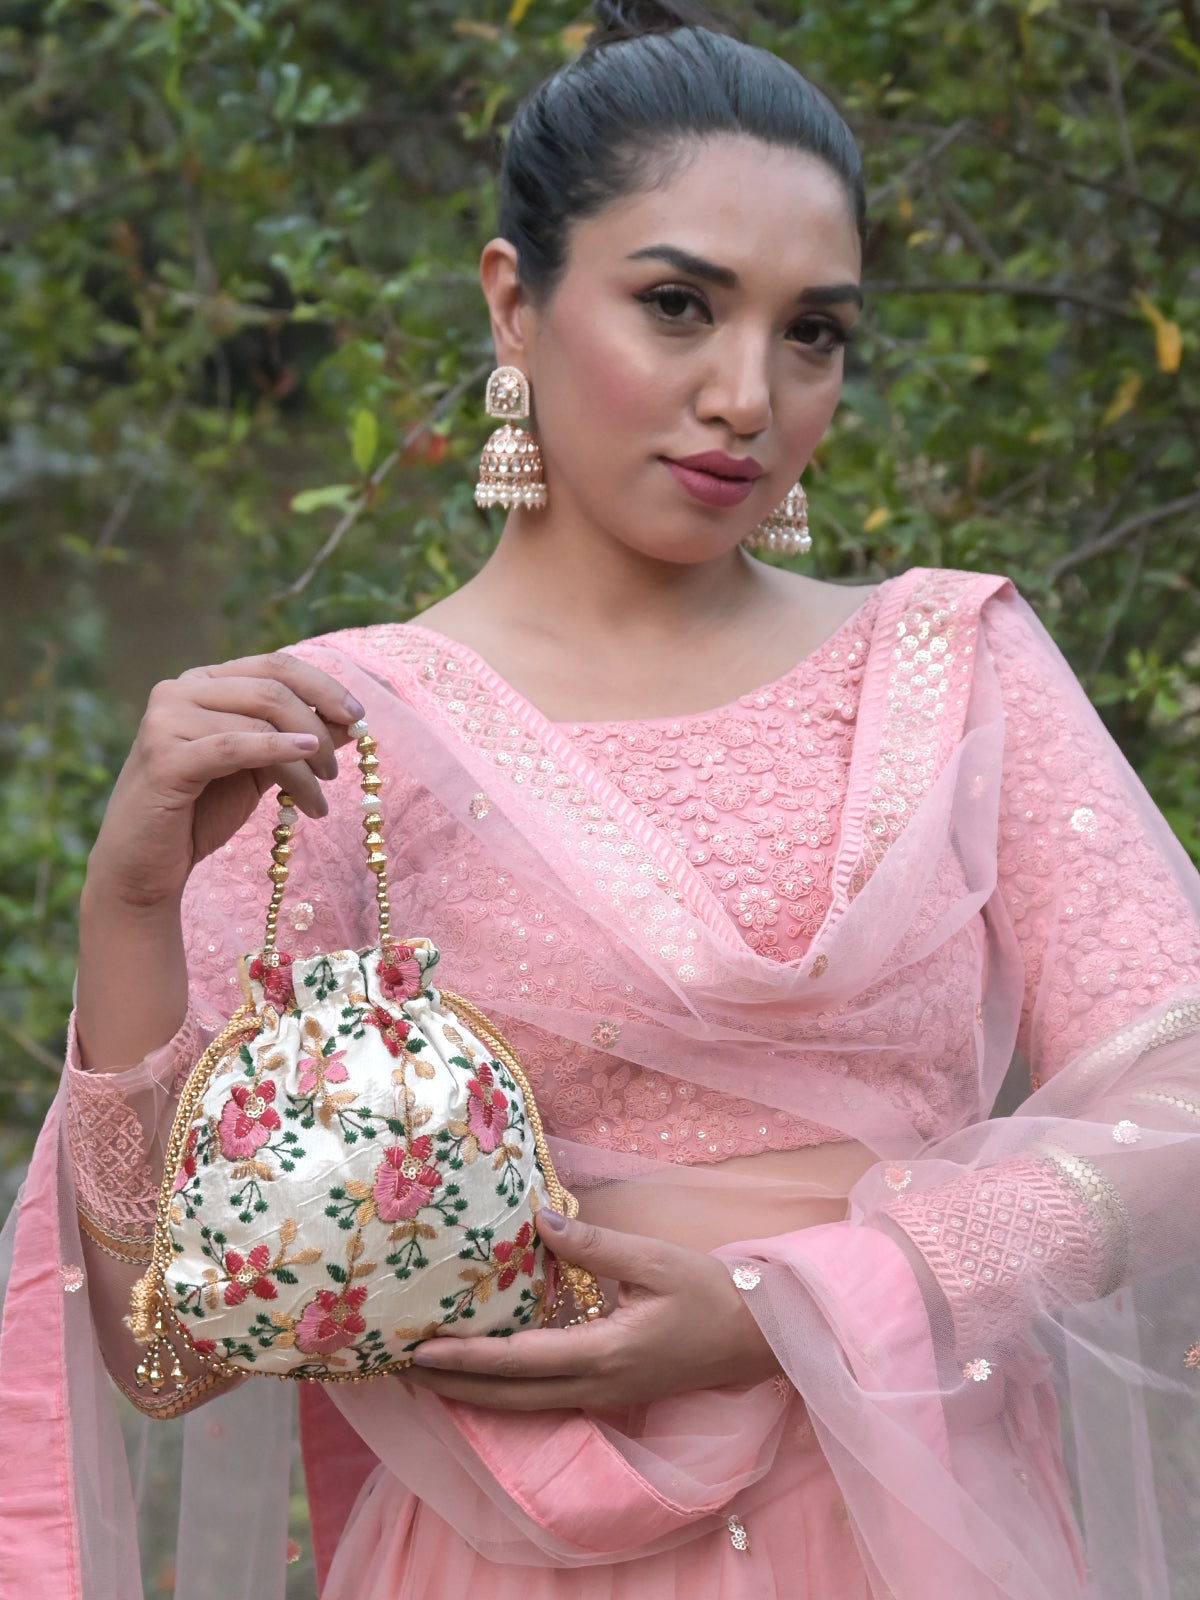 Odette Multicolor Floral Embroidered Potli Bag for Women